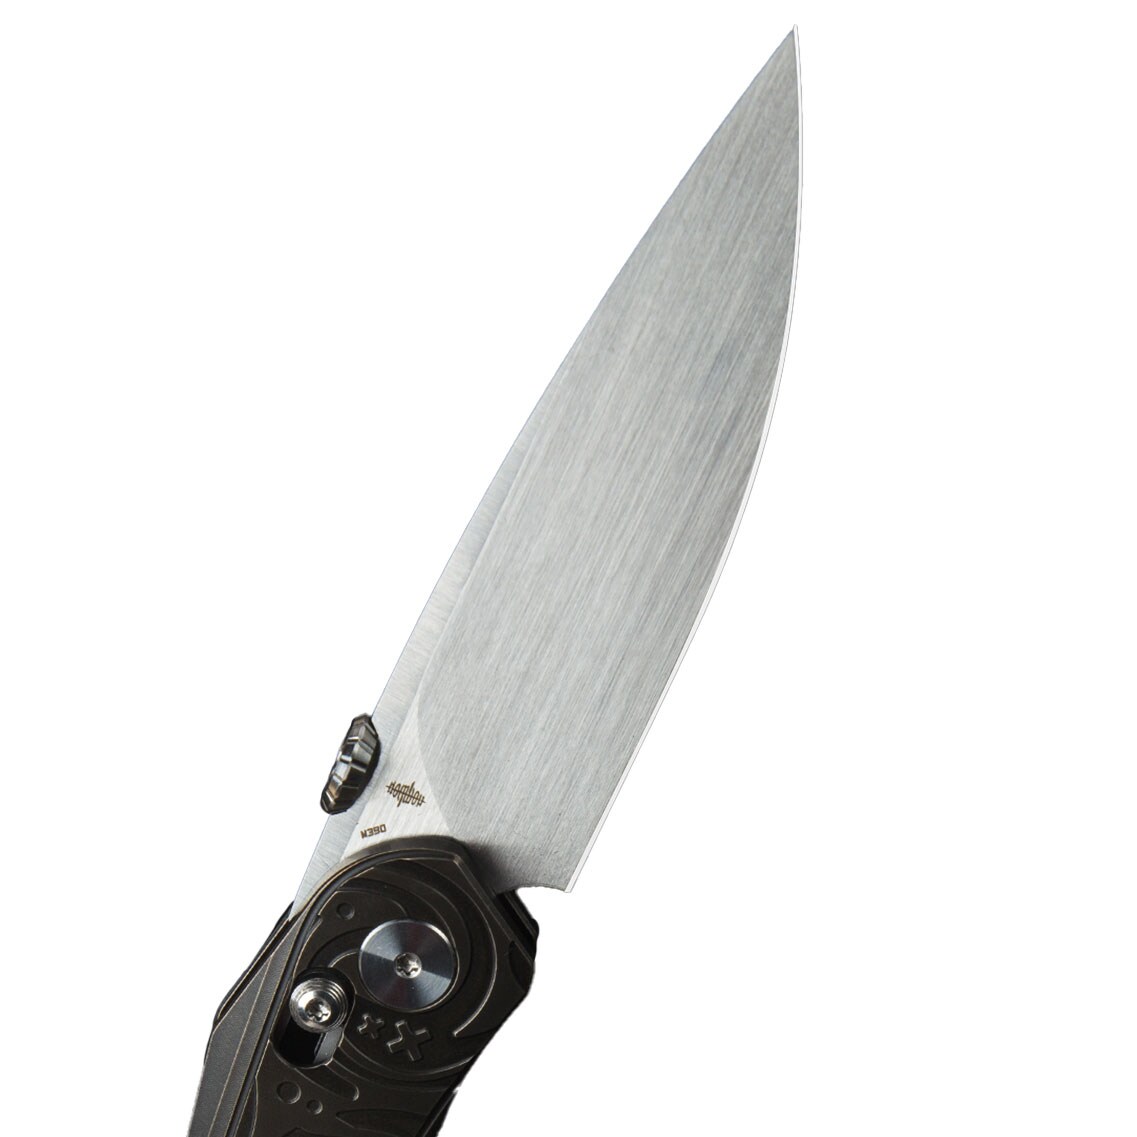 Nóż składany Bestech Knives Mothus - Satin Blade/Bronze Titanium